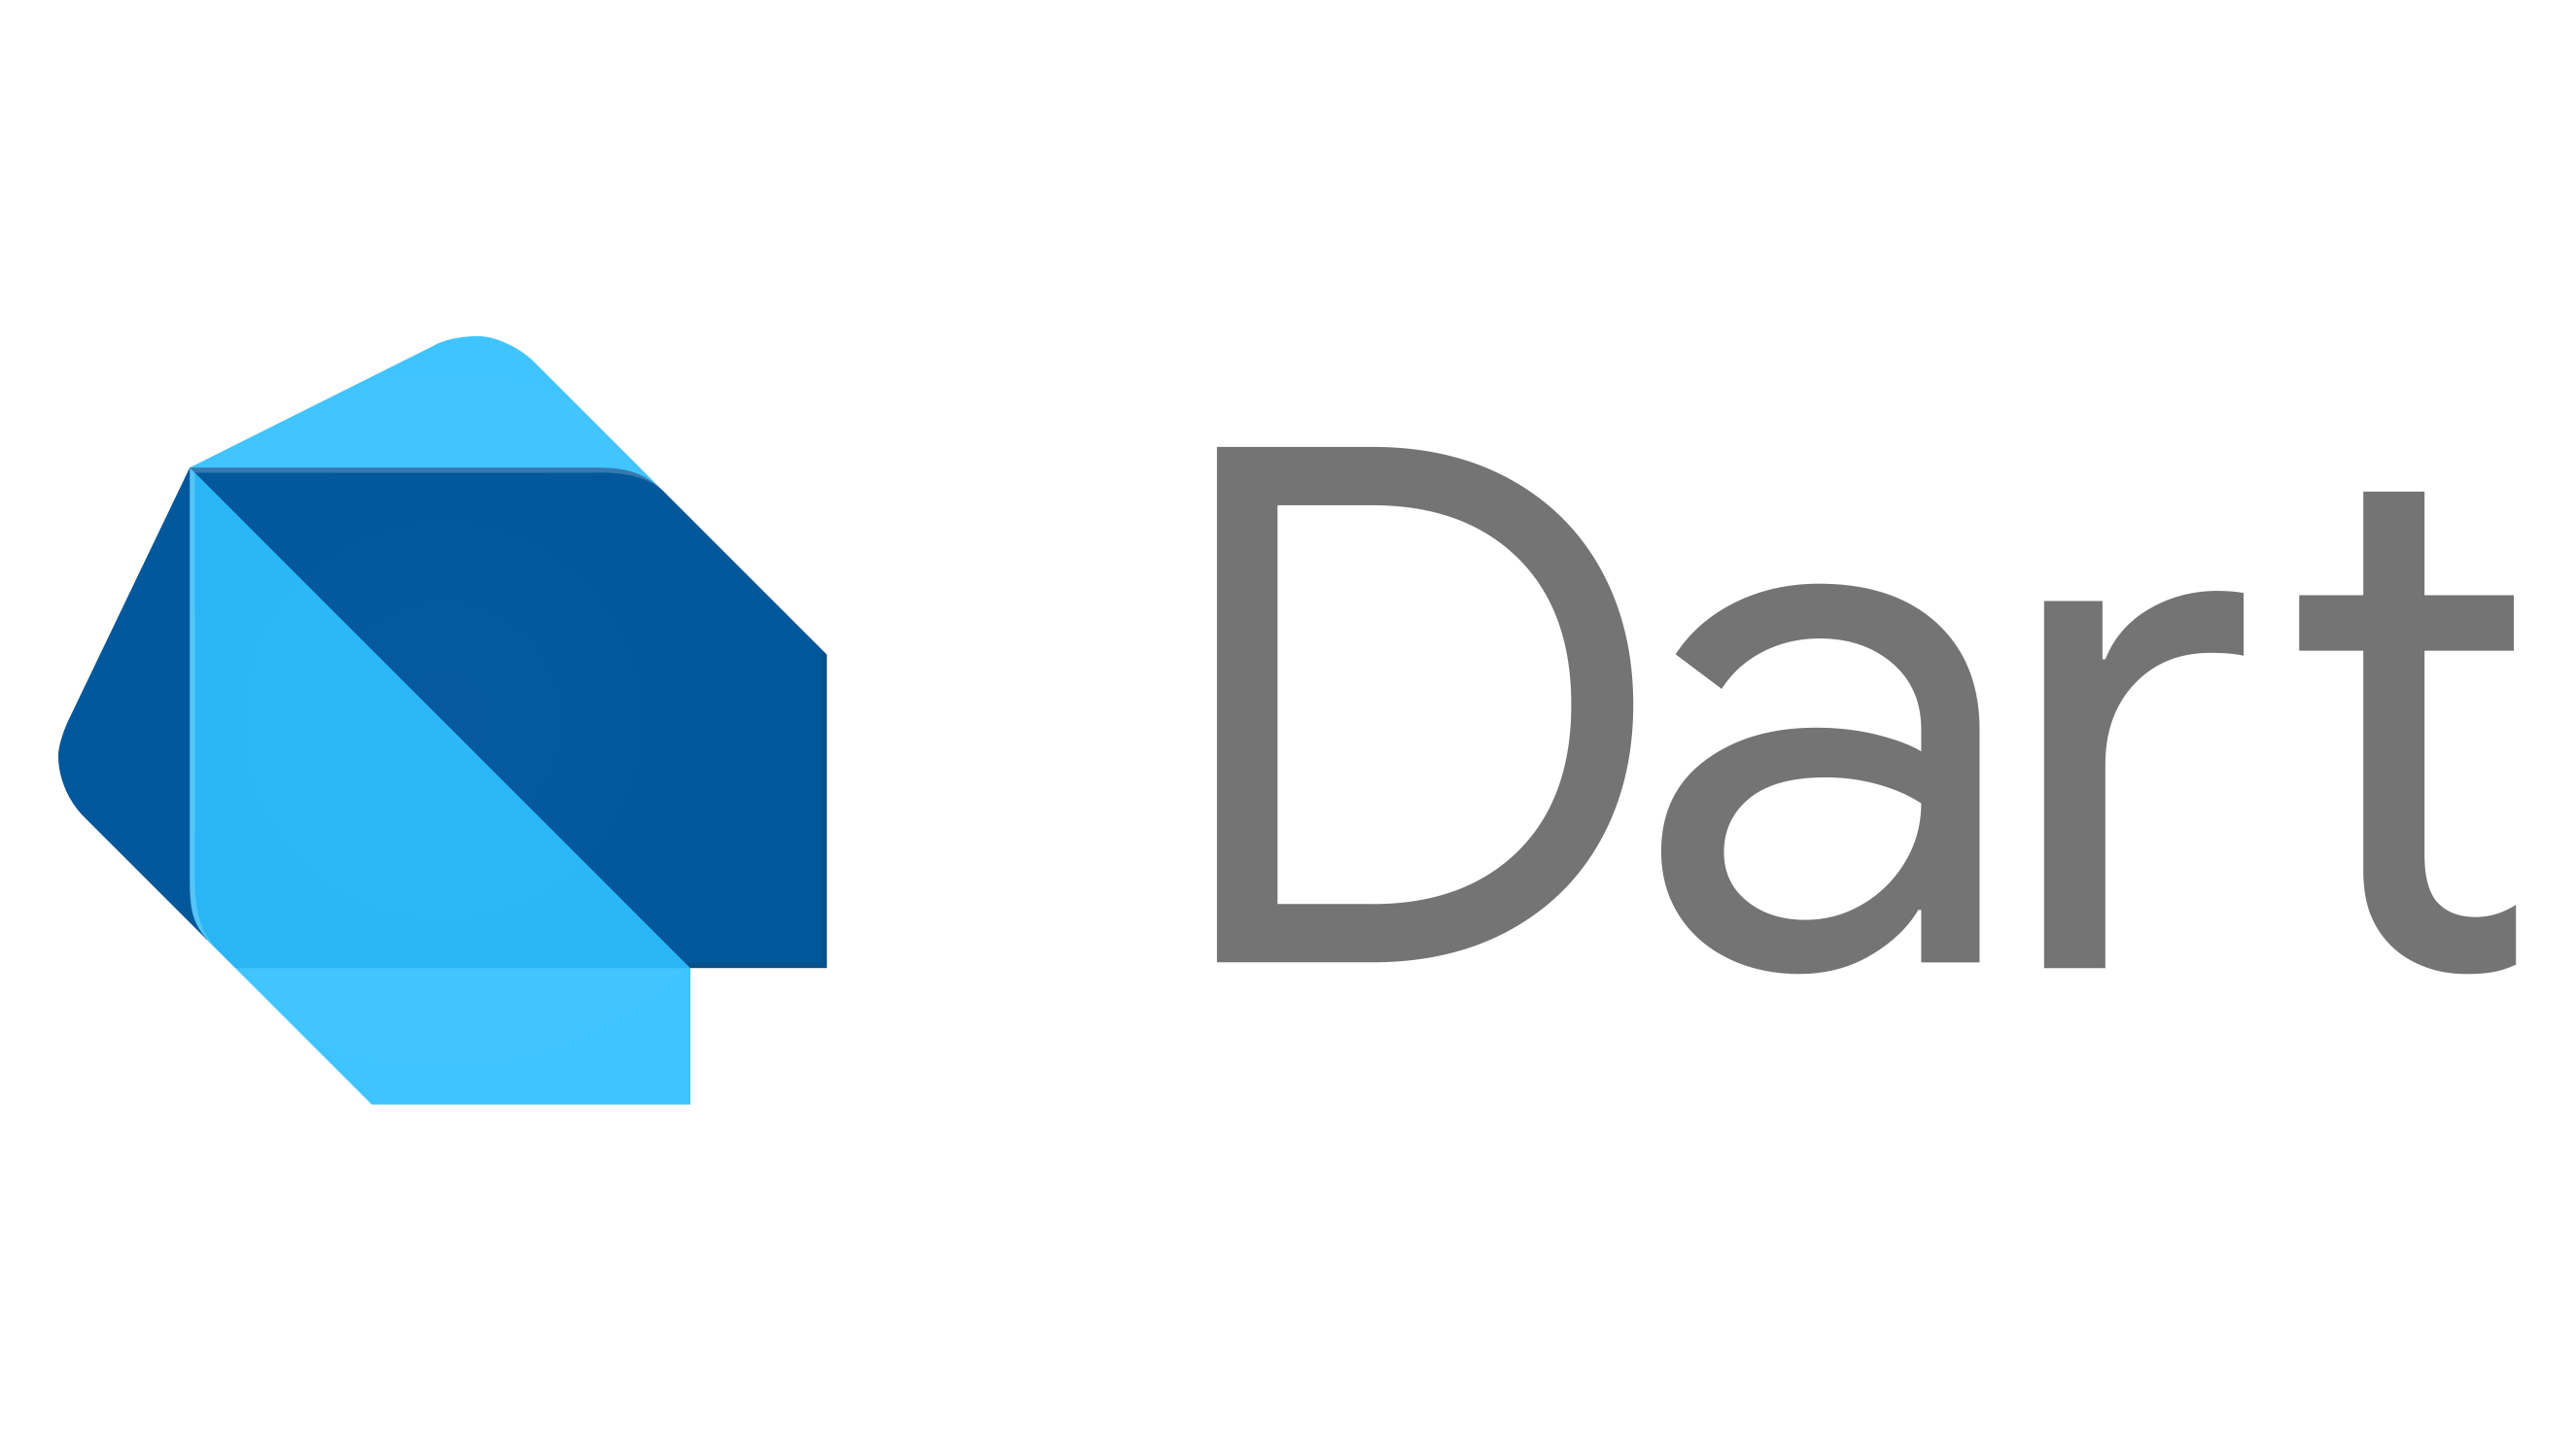 dart-logo-for-shares